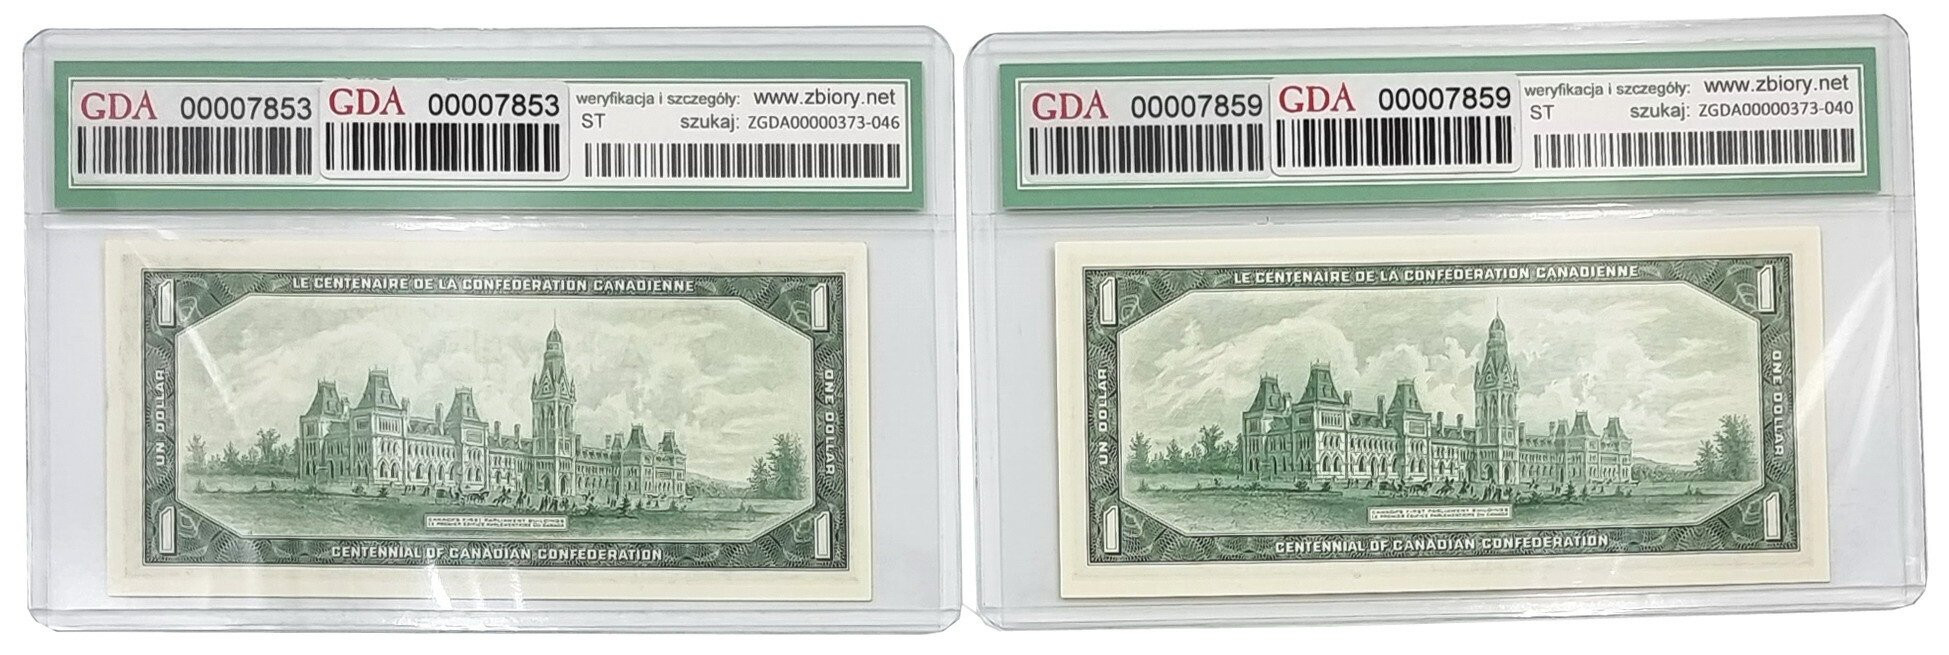 Kanada. 1 dolar 1967, zestaw 2 sztuk